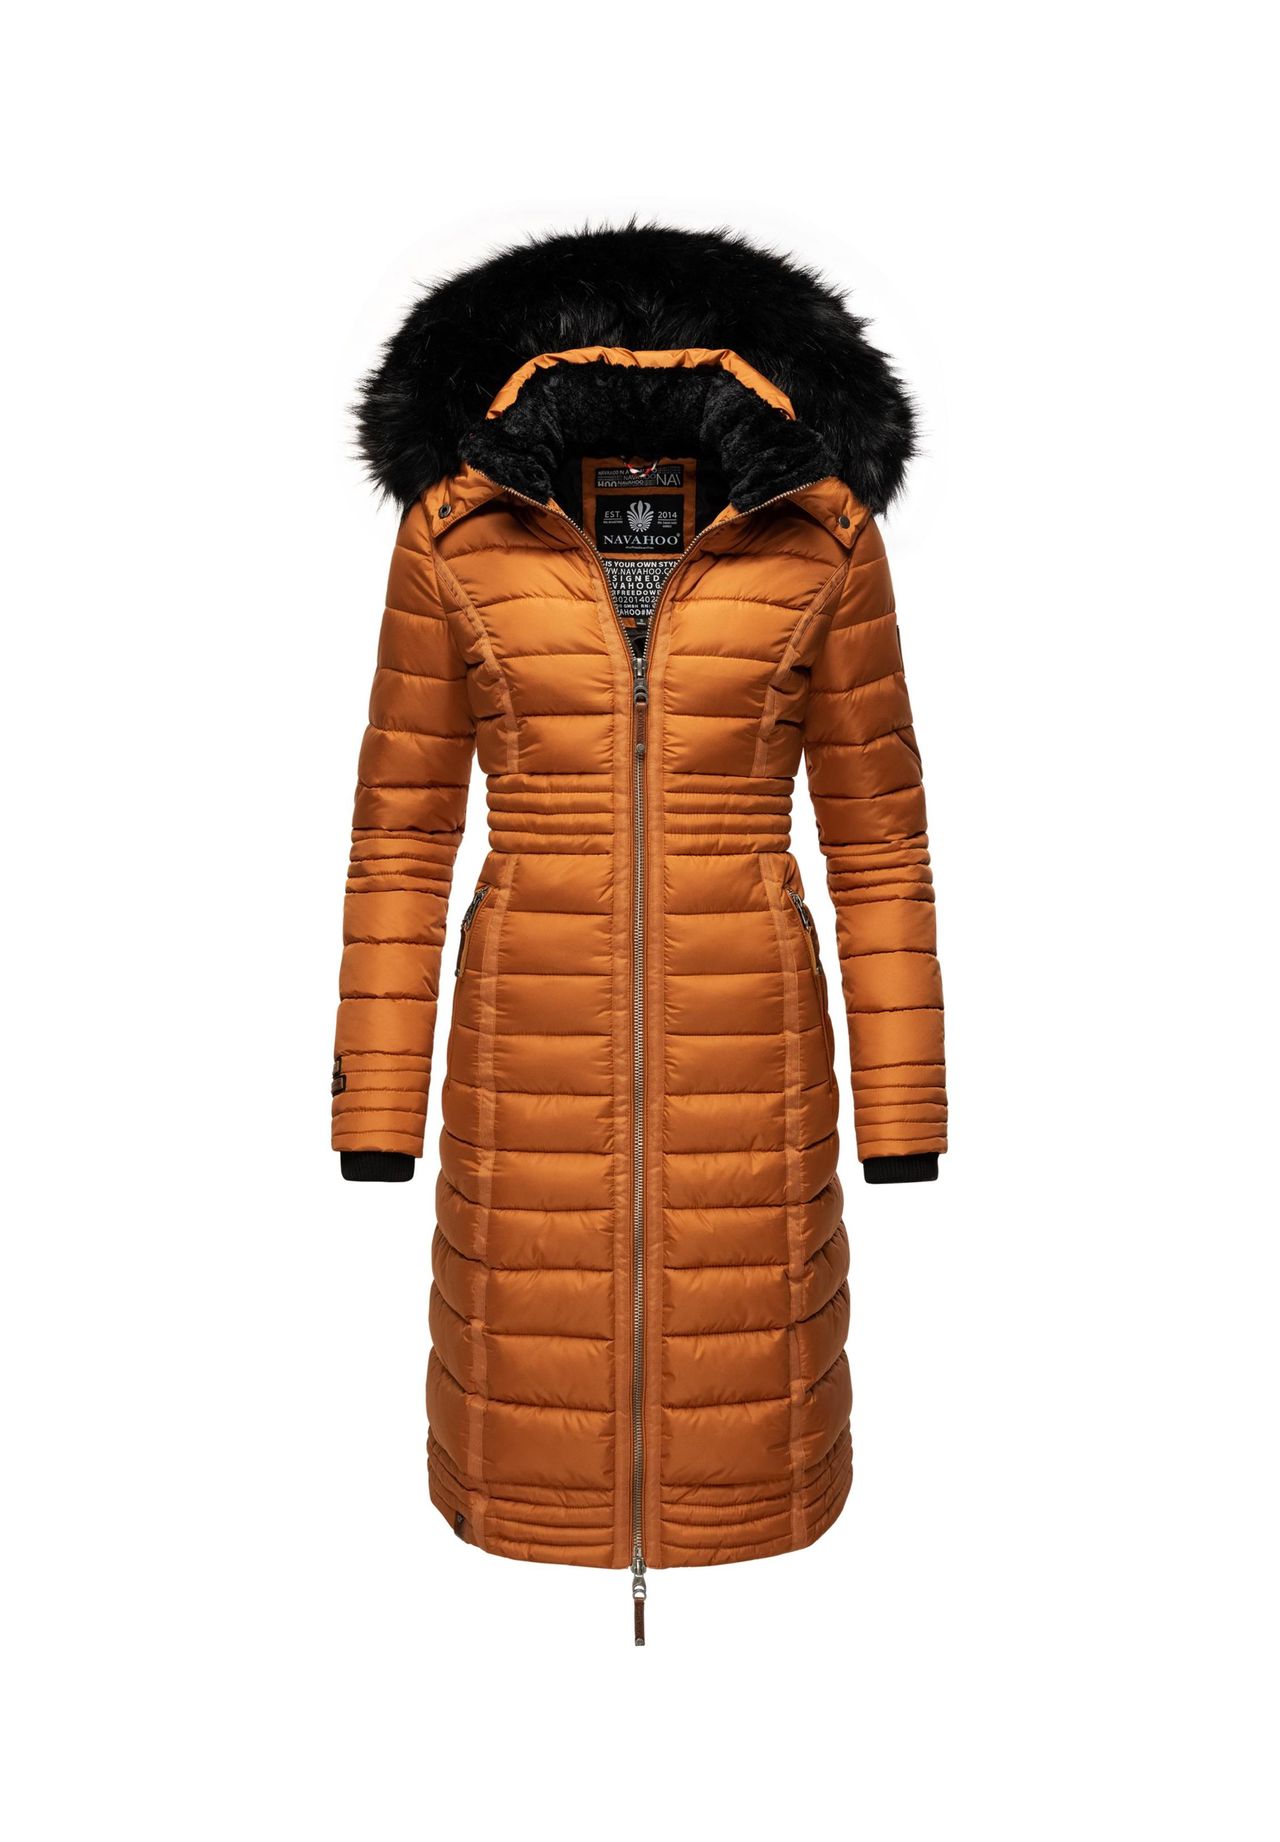 Mantel braun xl kaufen | GALERIA